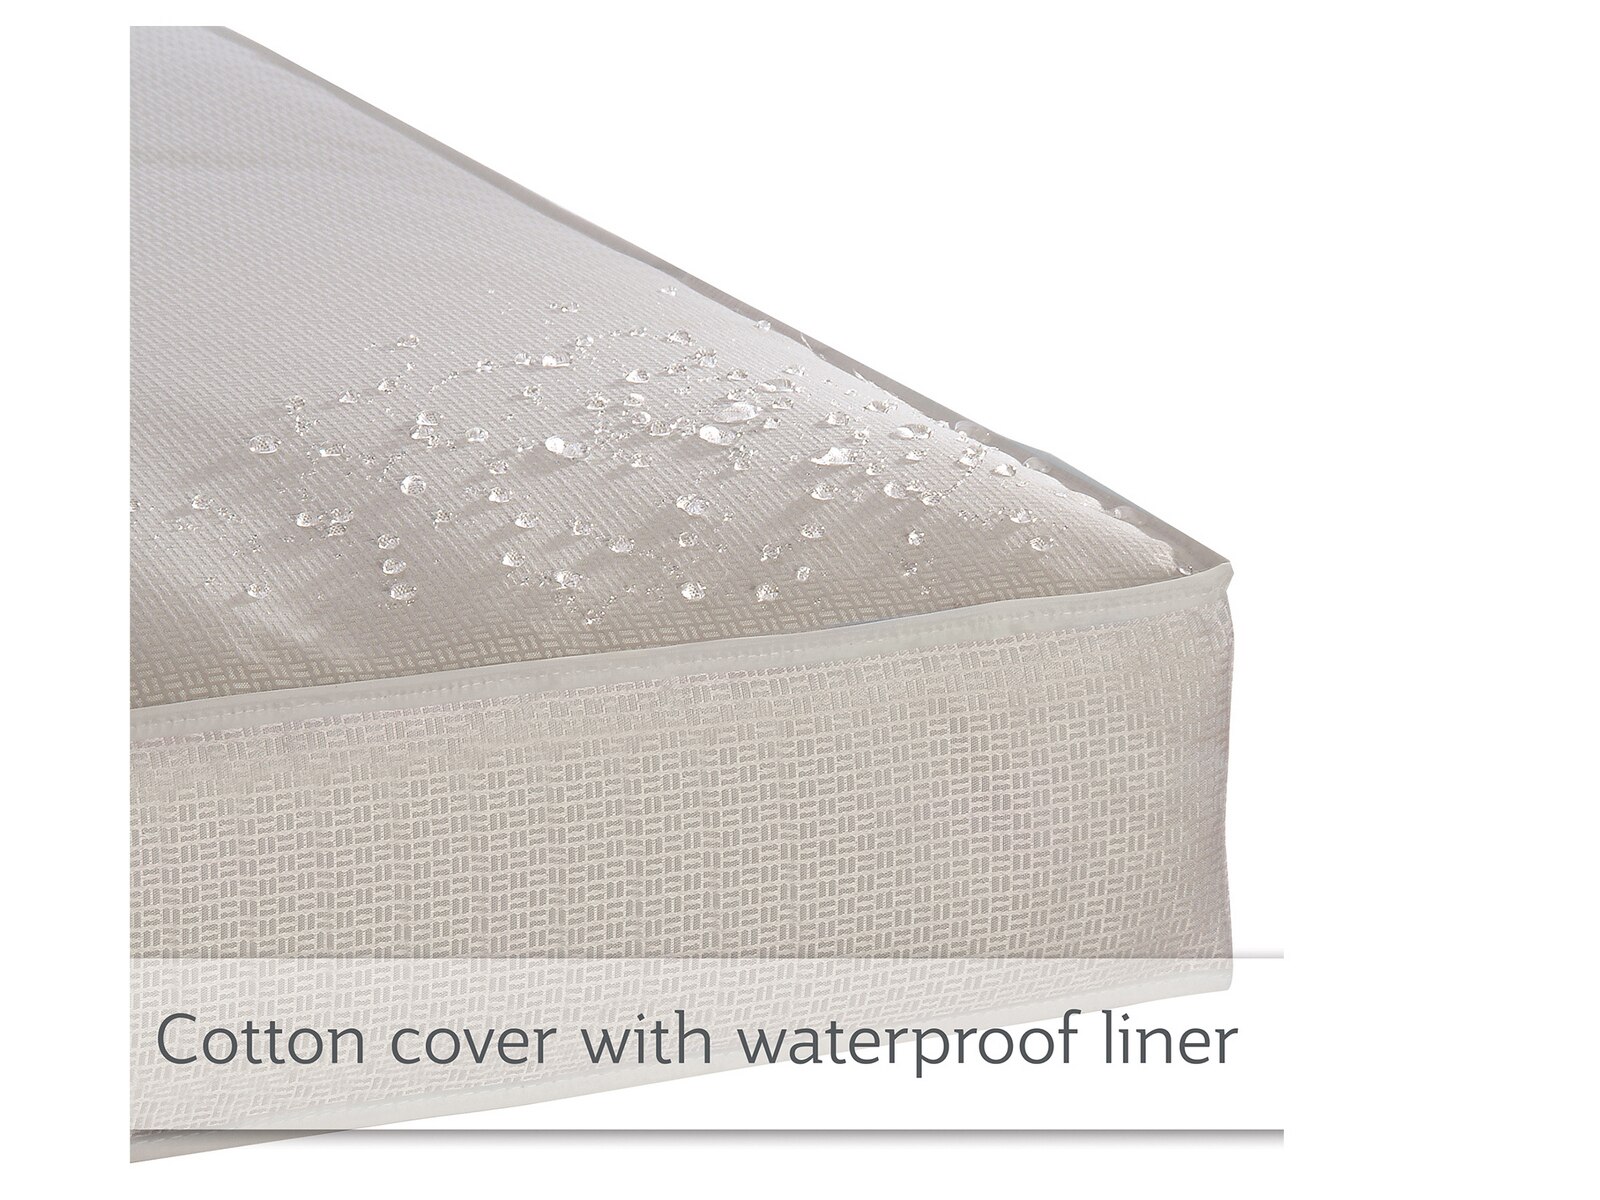 opticool 2-stage cooling crib/toddler mattress